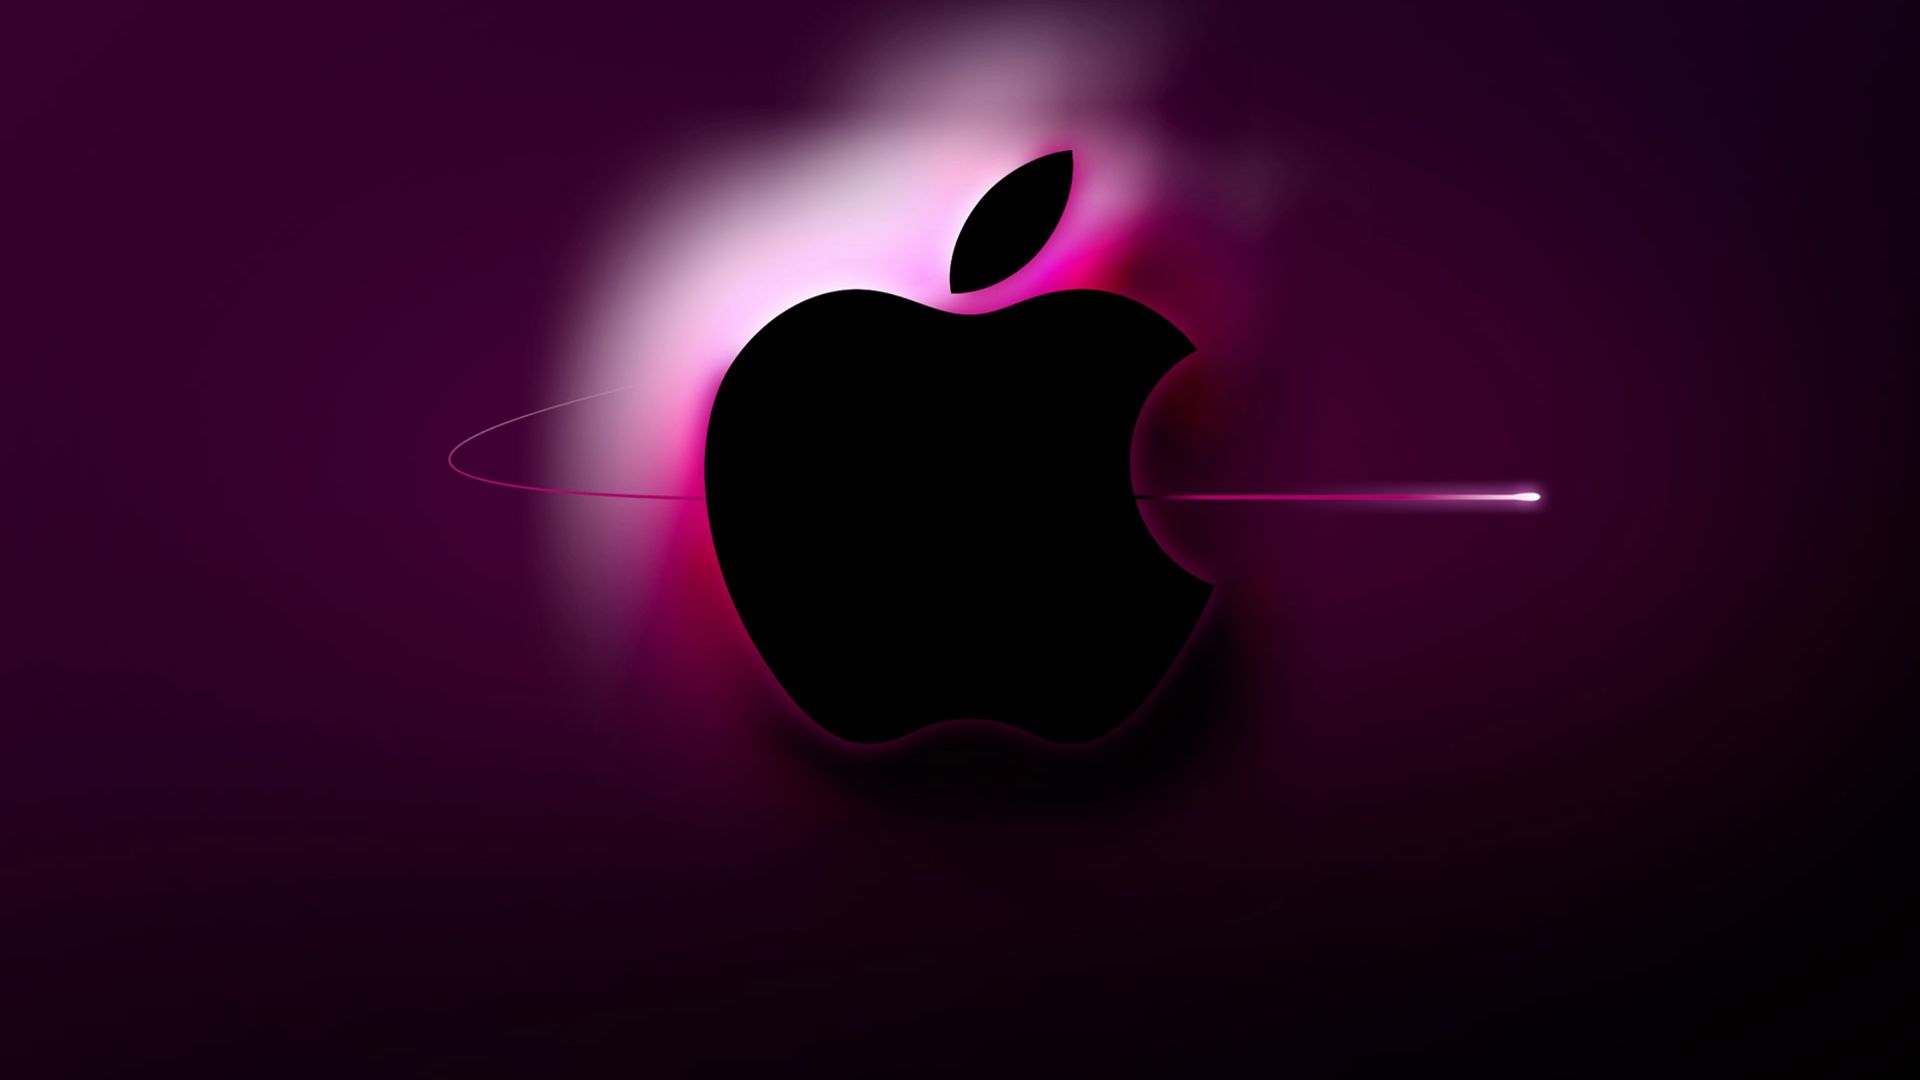 Por qué Apple tiene una manzana mordida en su imagen - Infobae